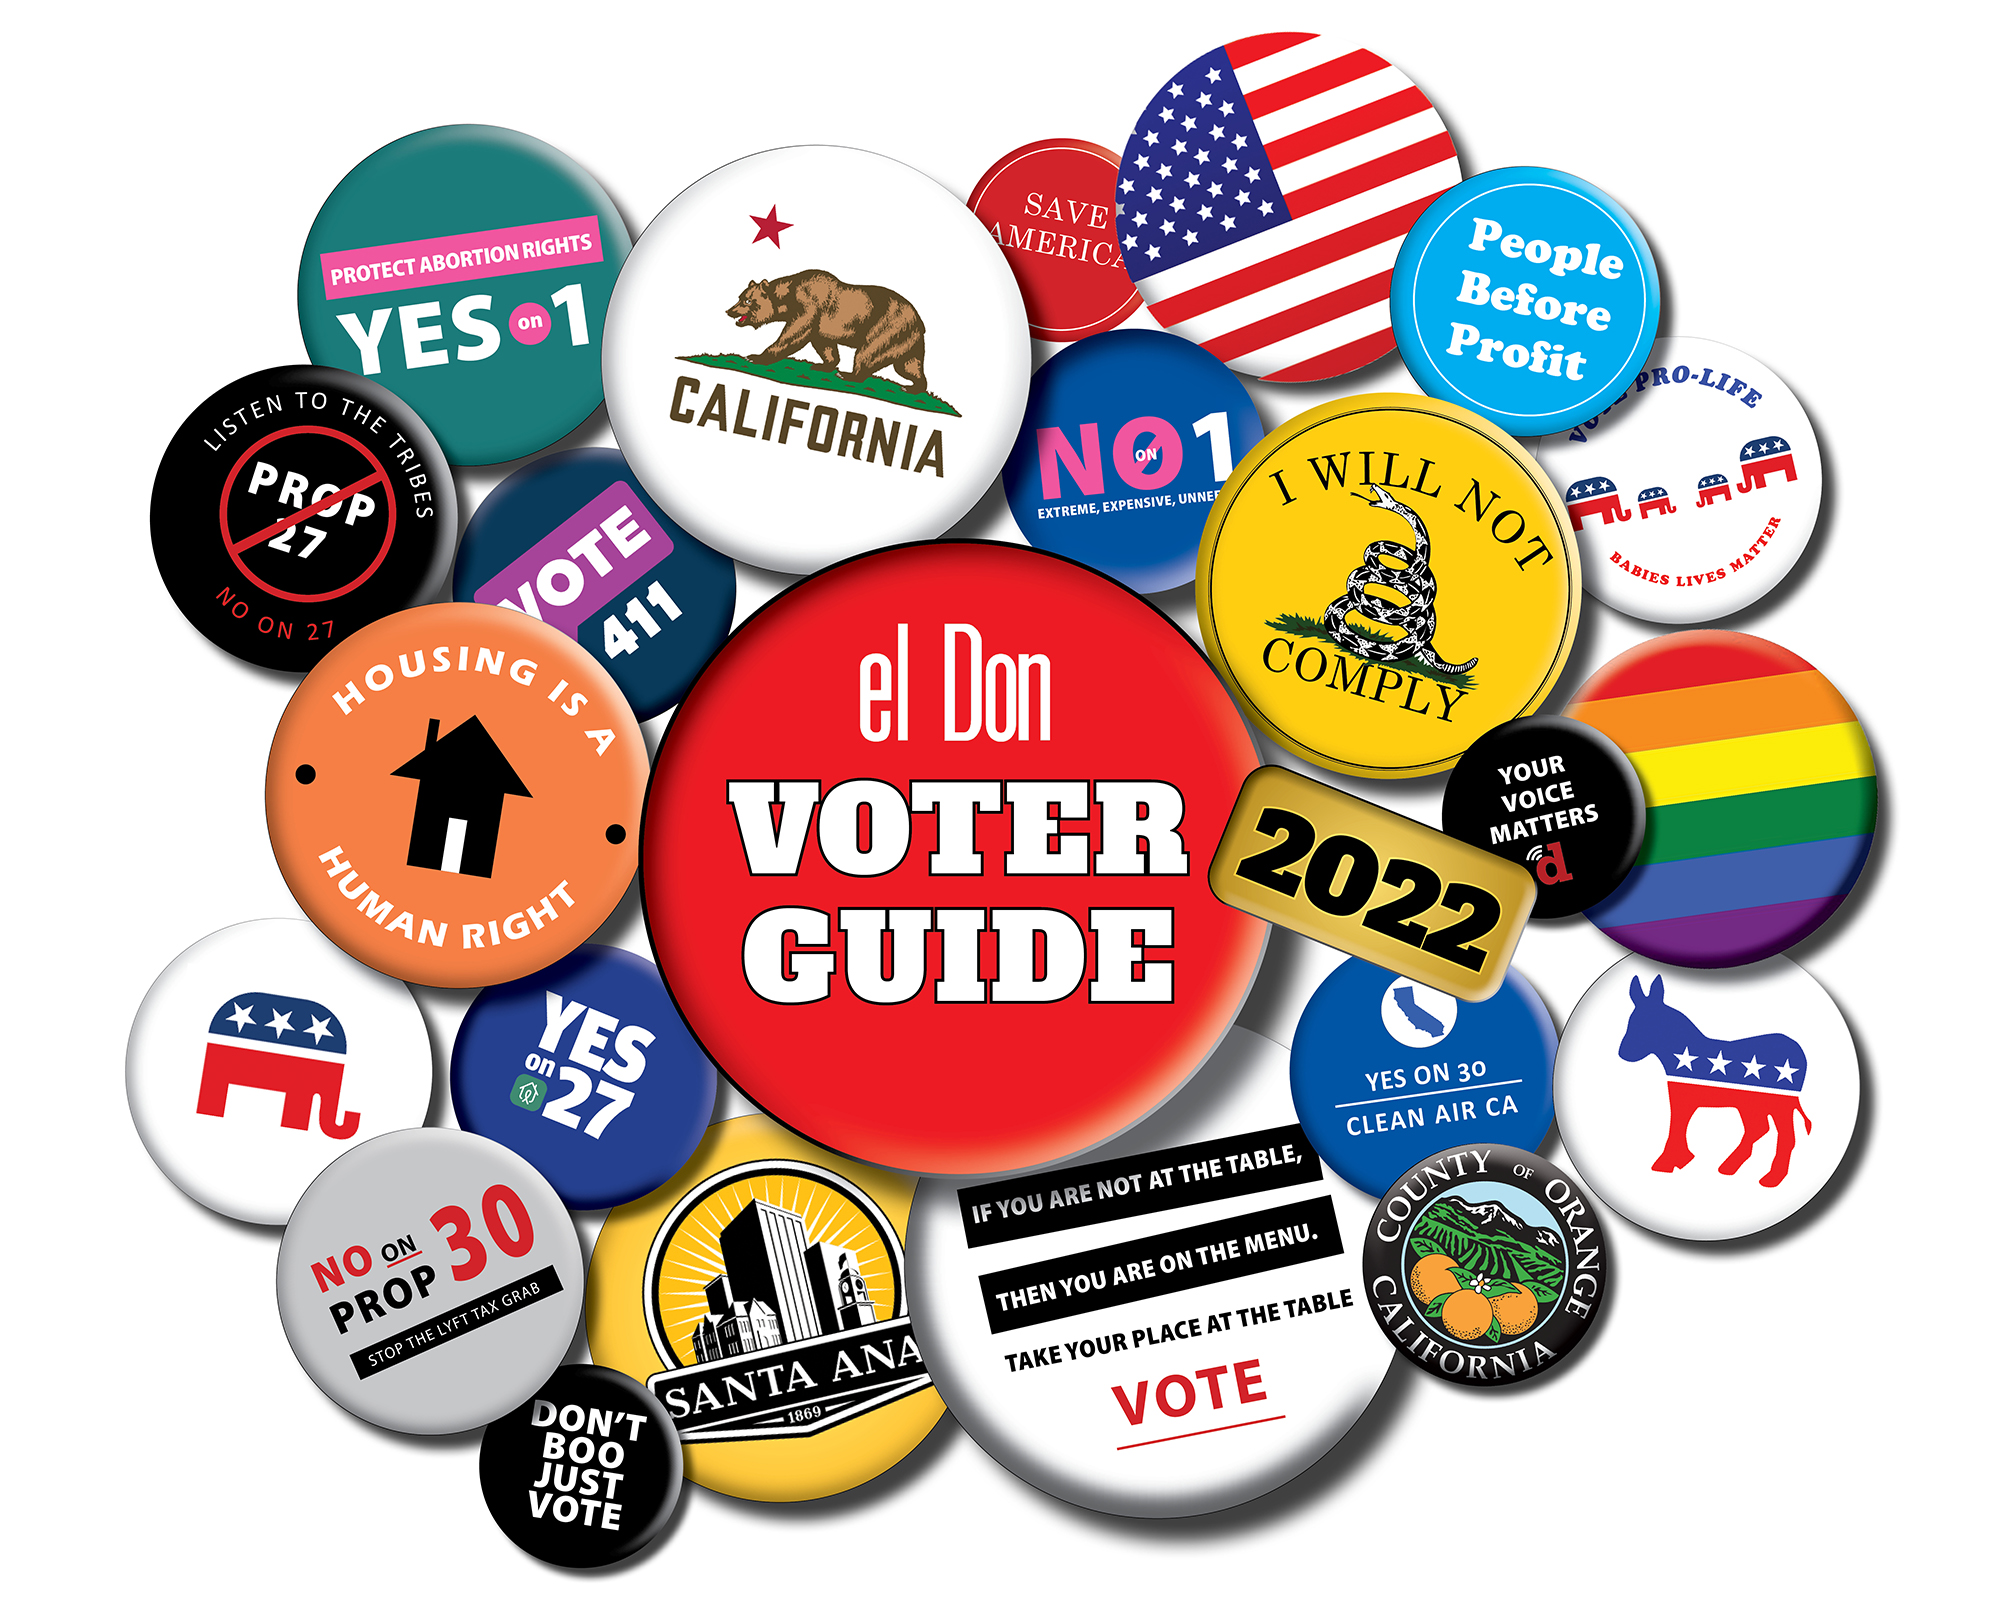 el Don General Election voter guide